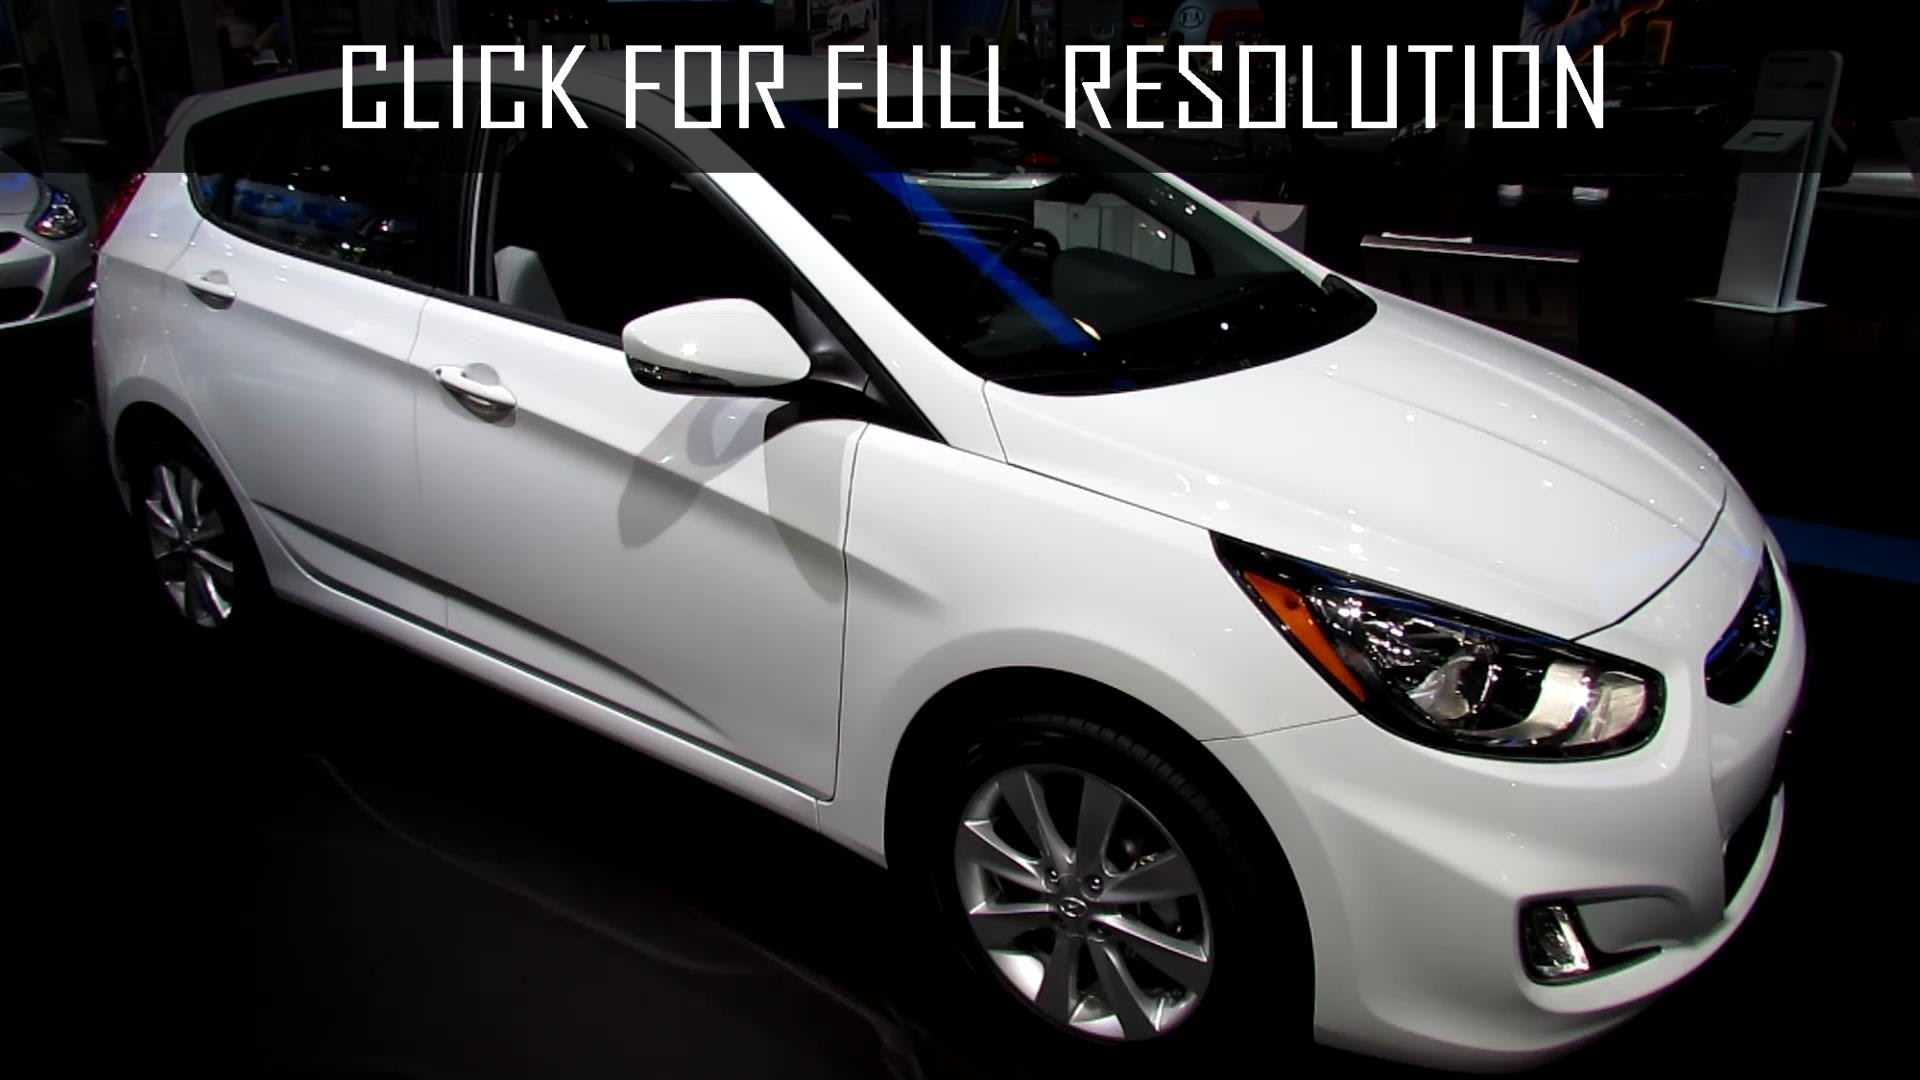 Hyundai Accent Hatchback 2013